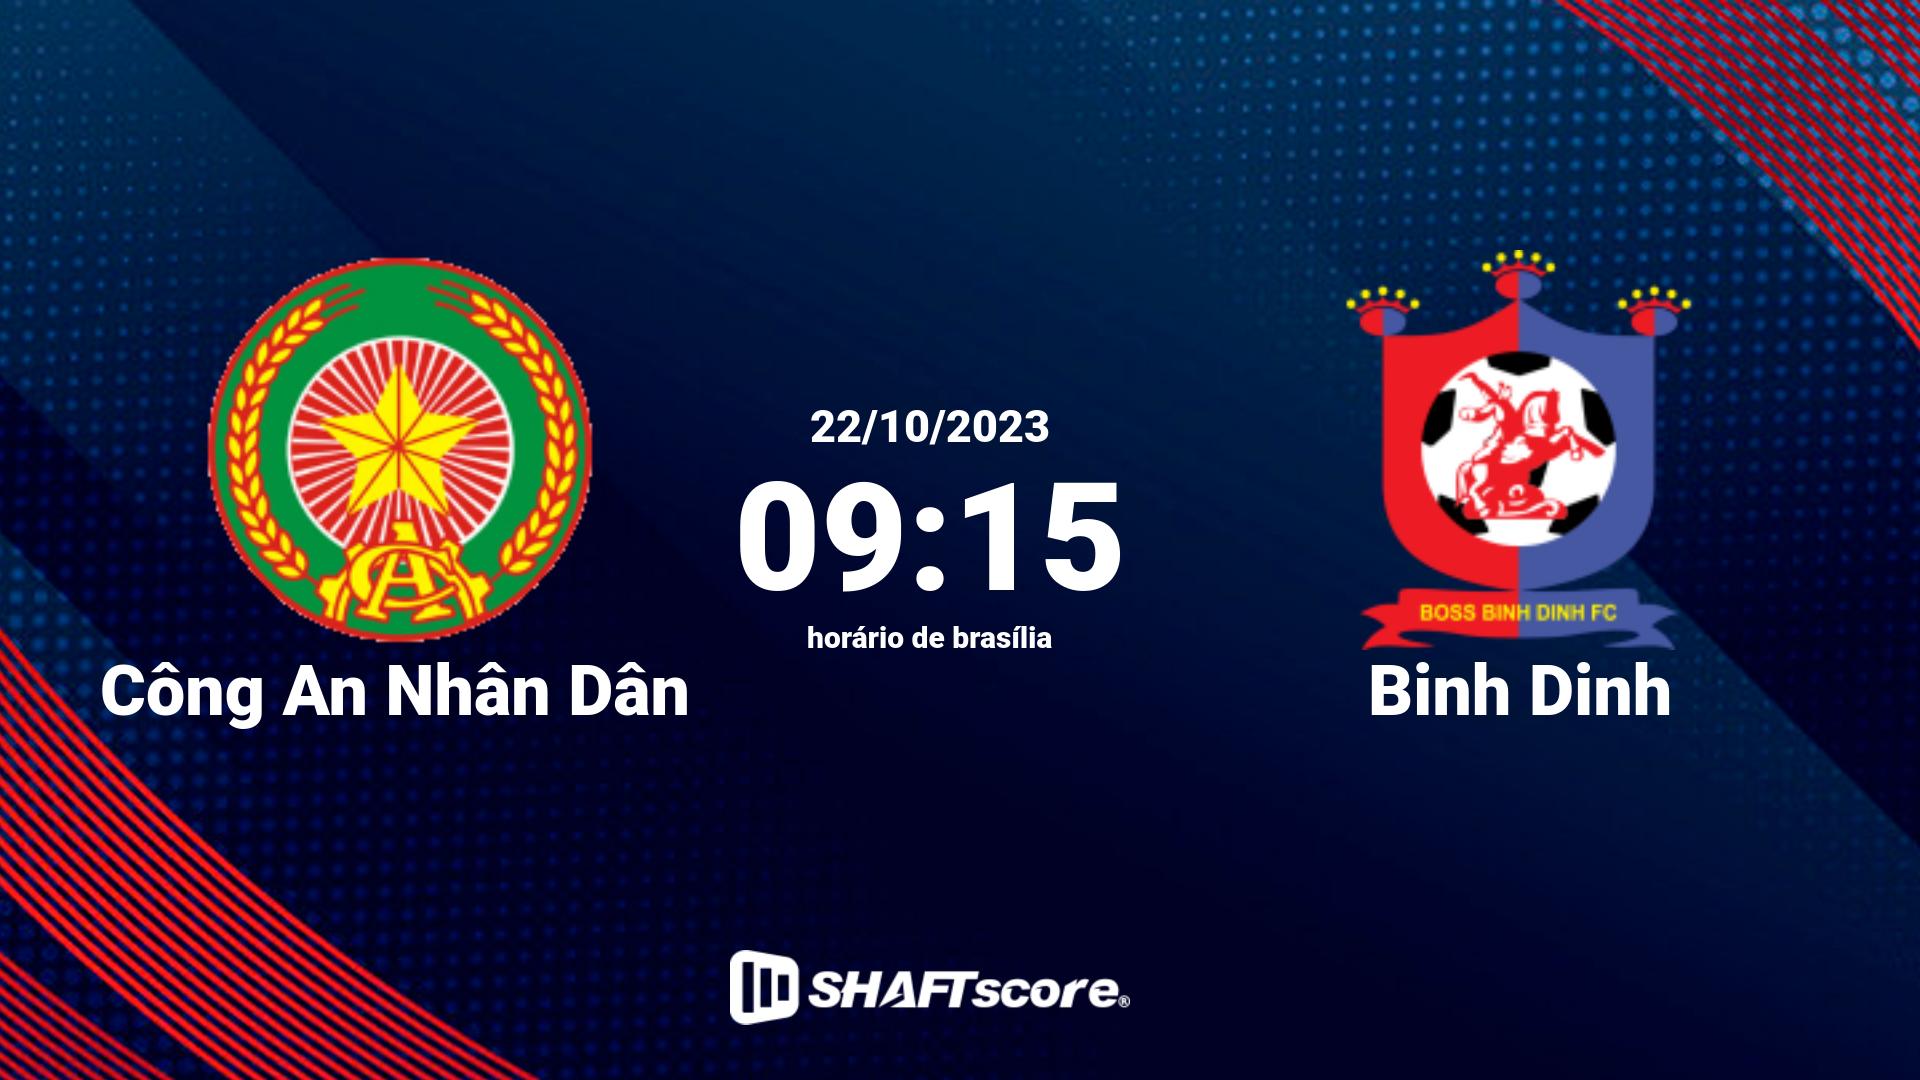 Estatísticas do jogo Công An Nhân Dân vs Binh Dinh 22.10 09:15